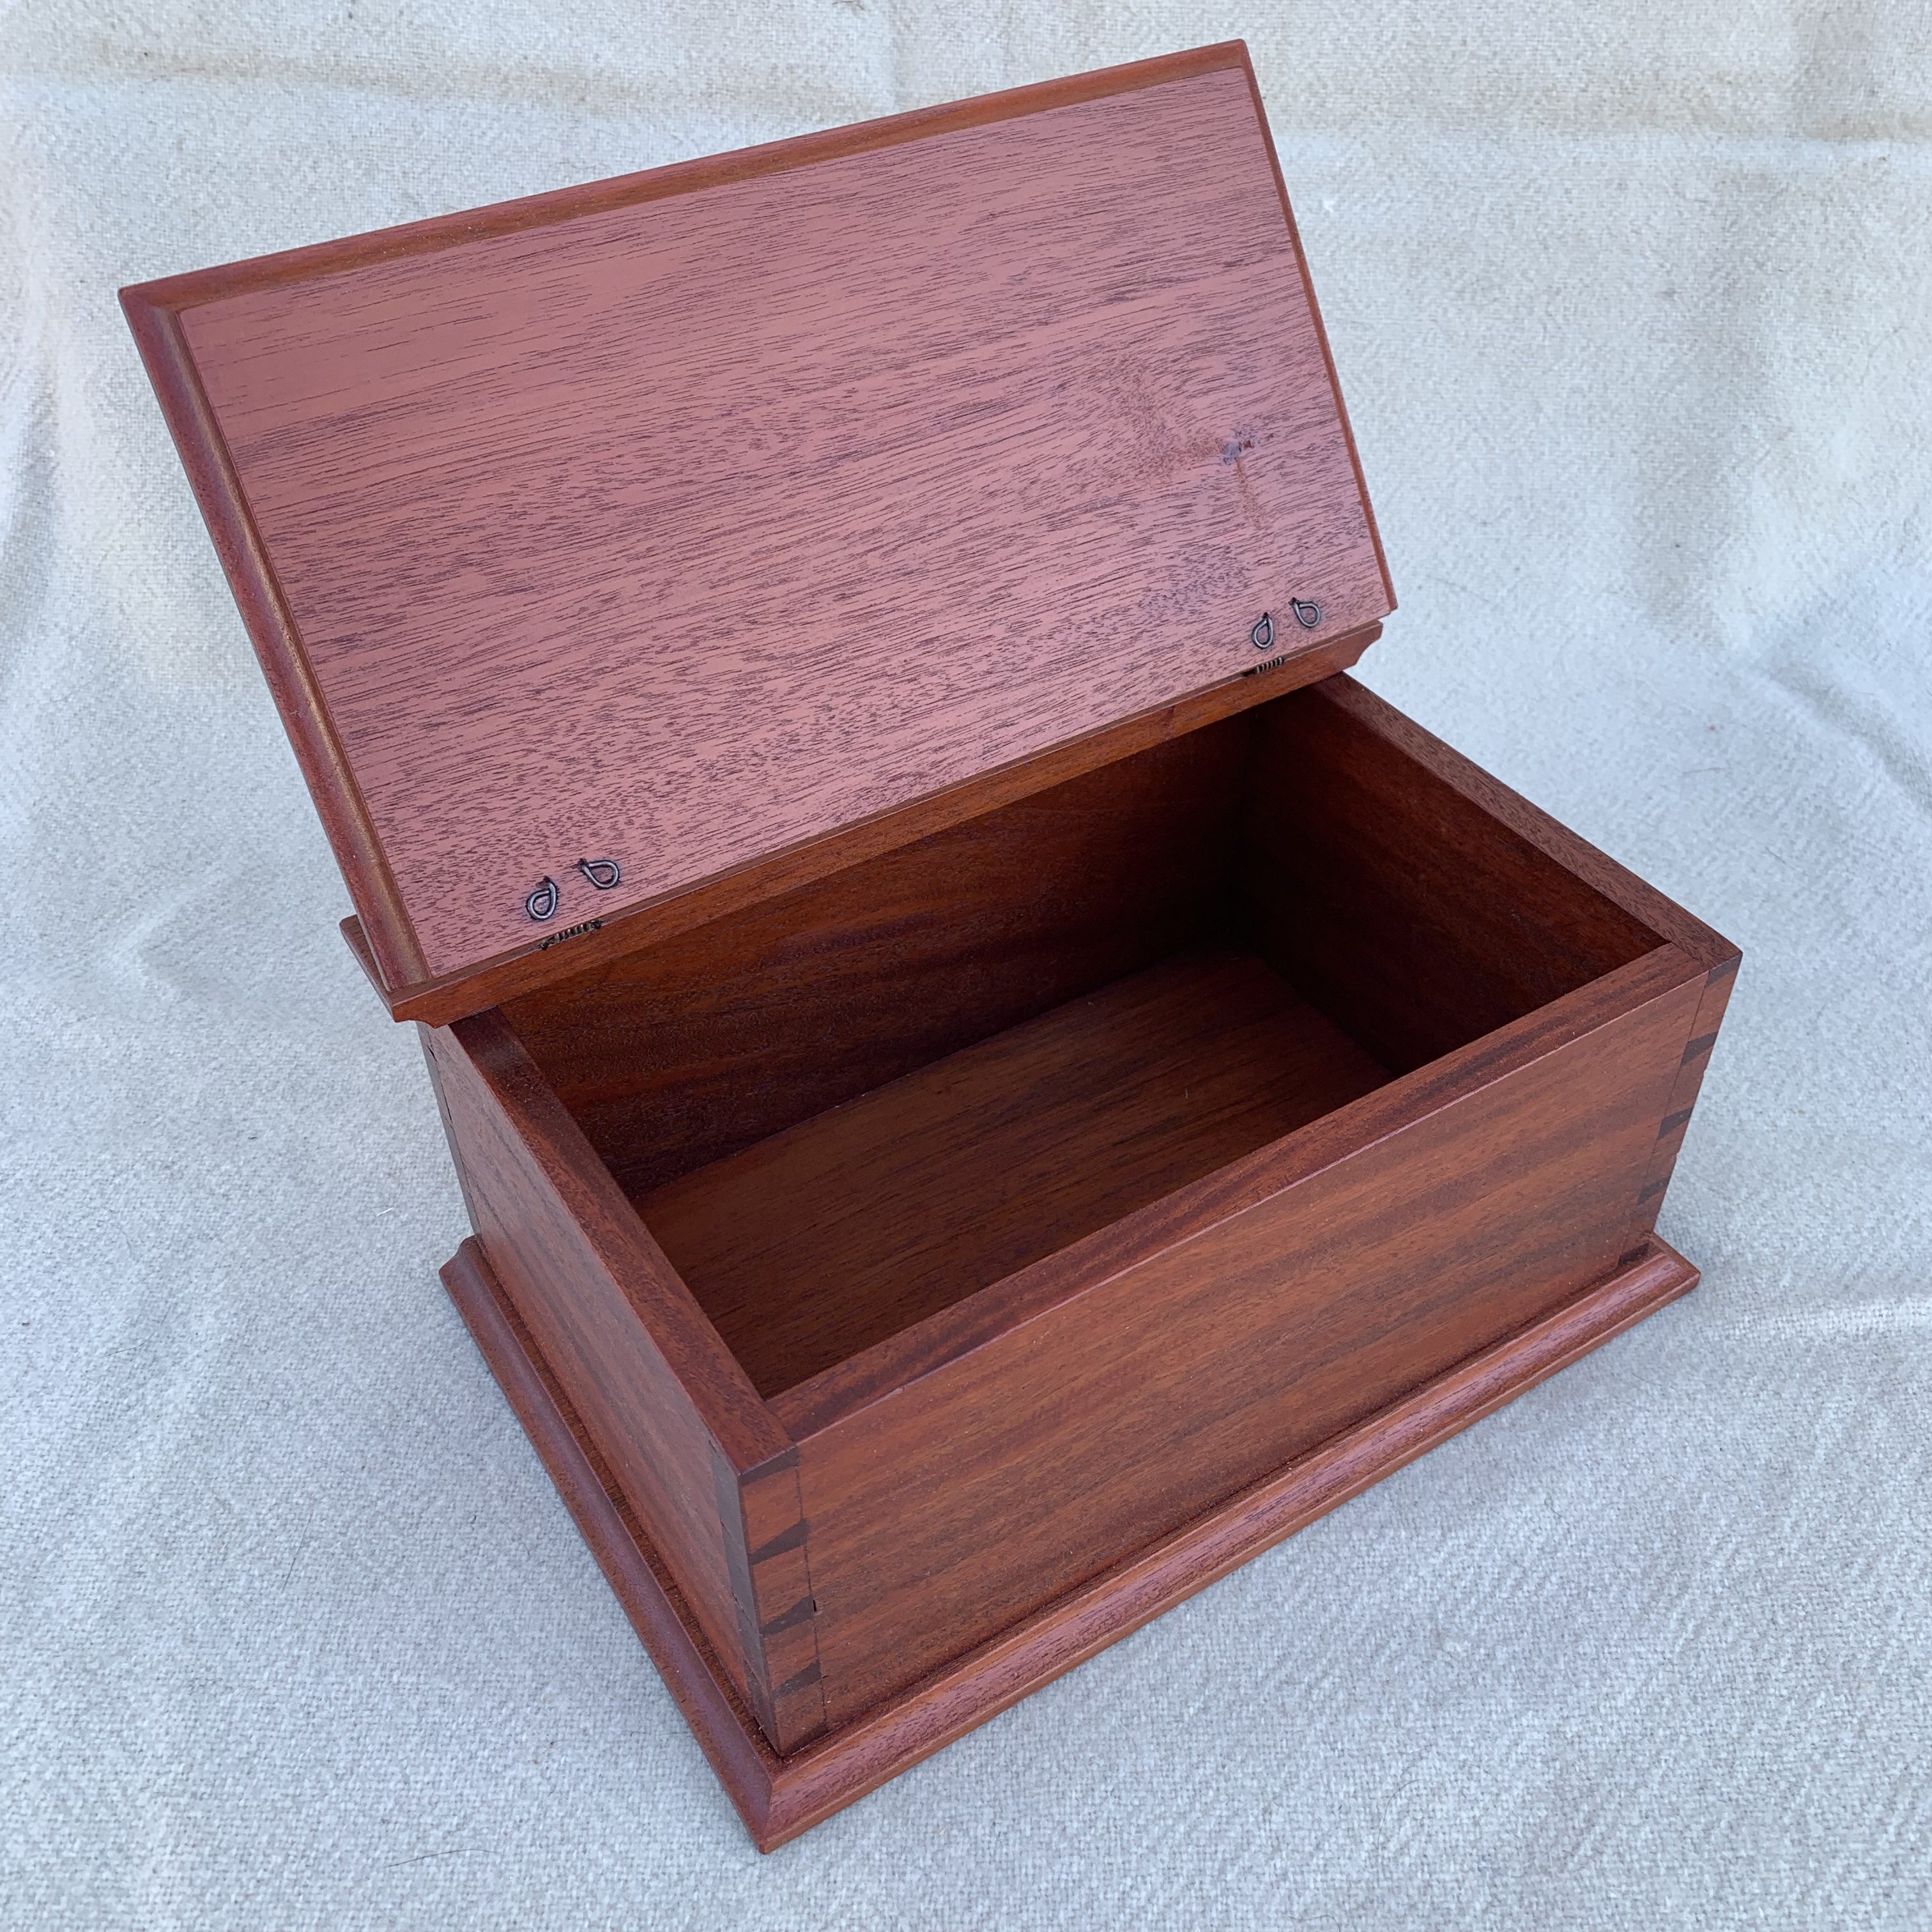 Mahogany table box interior